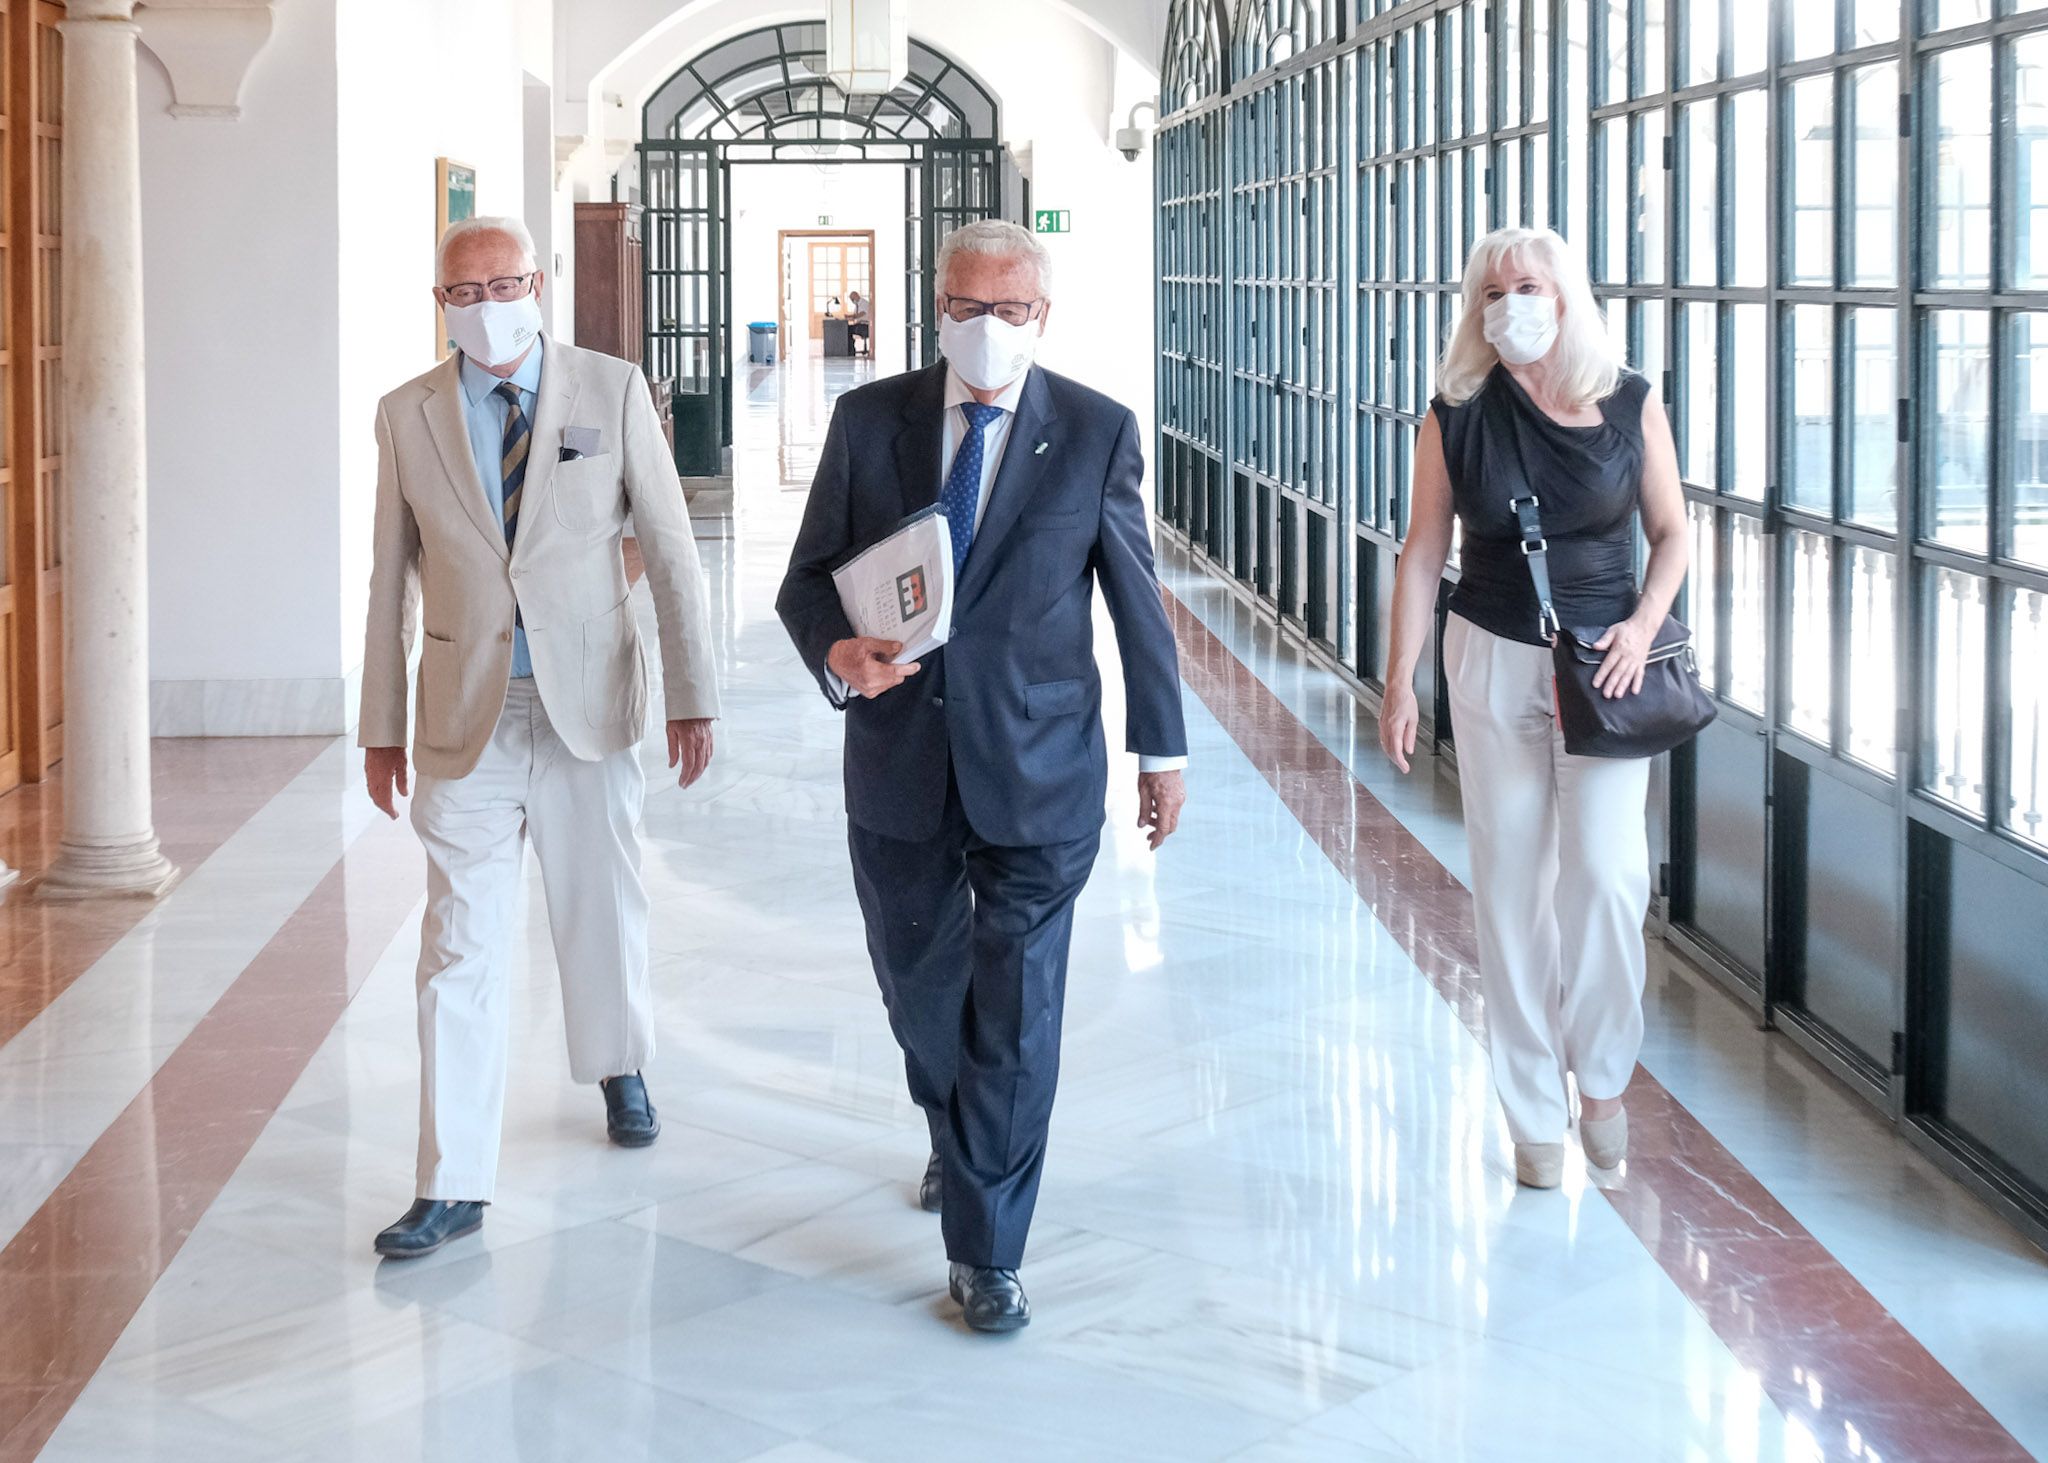 El Defensor del Pueblo Andaluz, Jesús Maeztu, se dirige al salón de protocolo acompañado de los defensores adjuntos Juana Pérez y Jaime Raynaud. PARLAMENTO